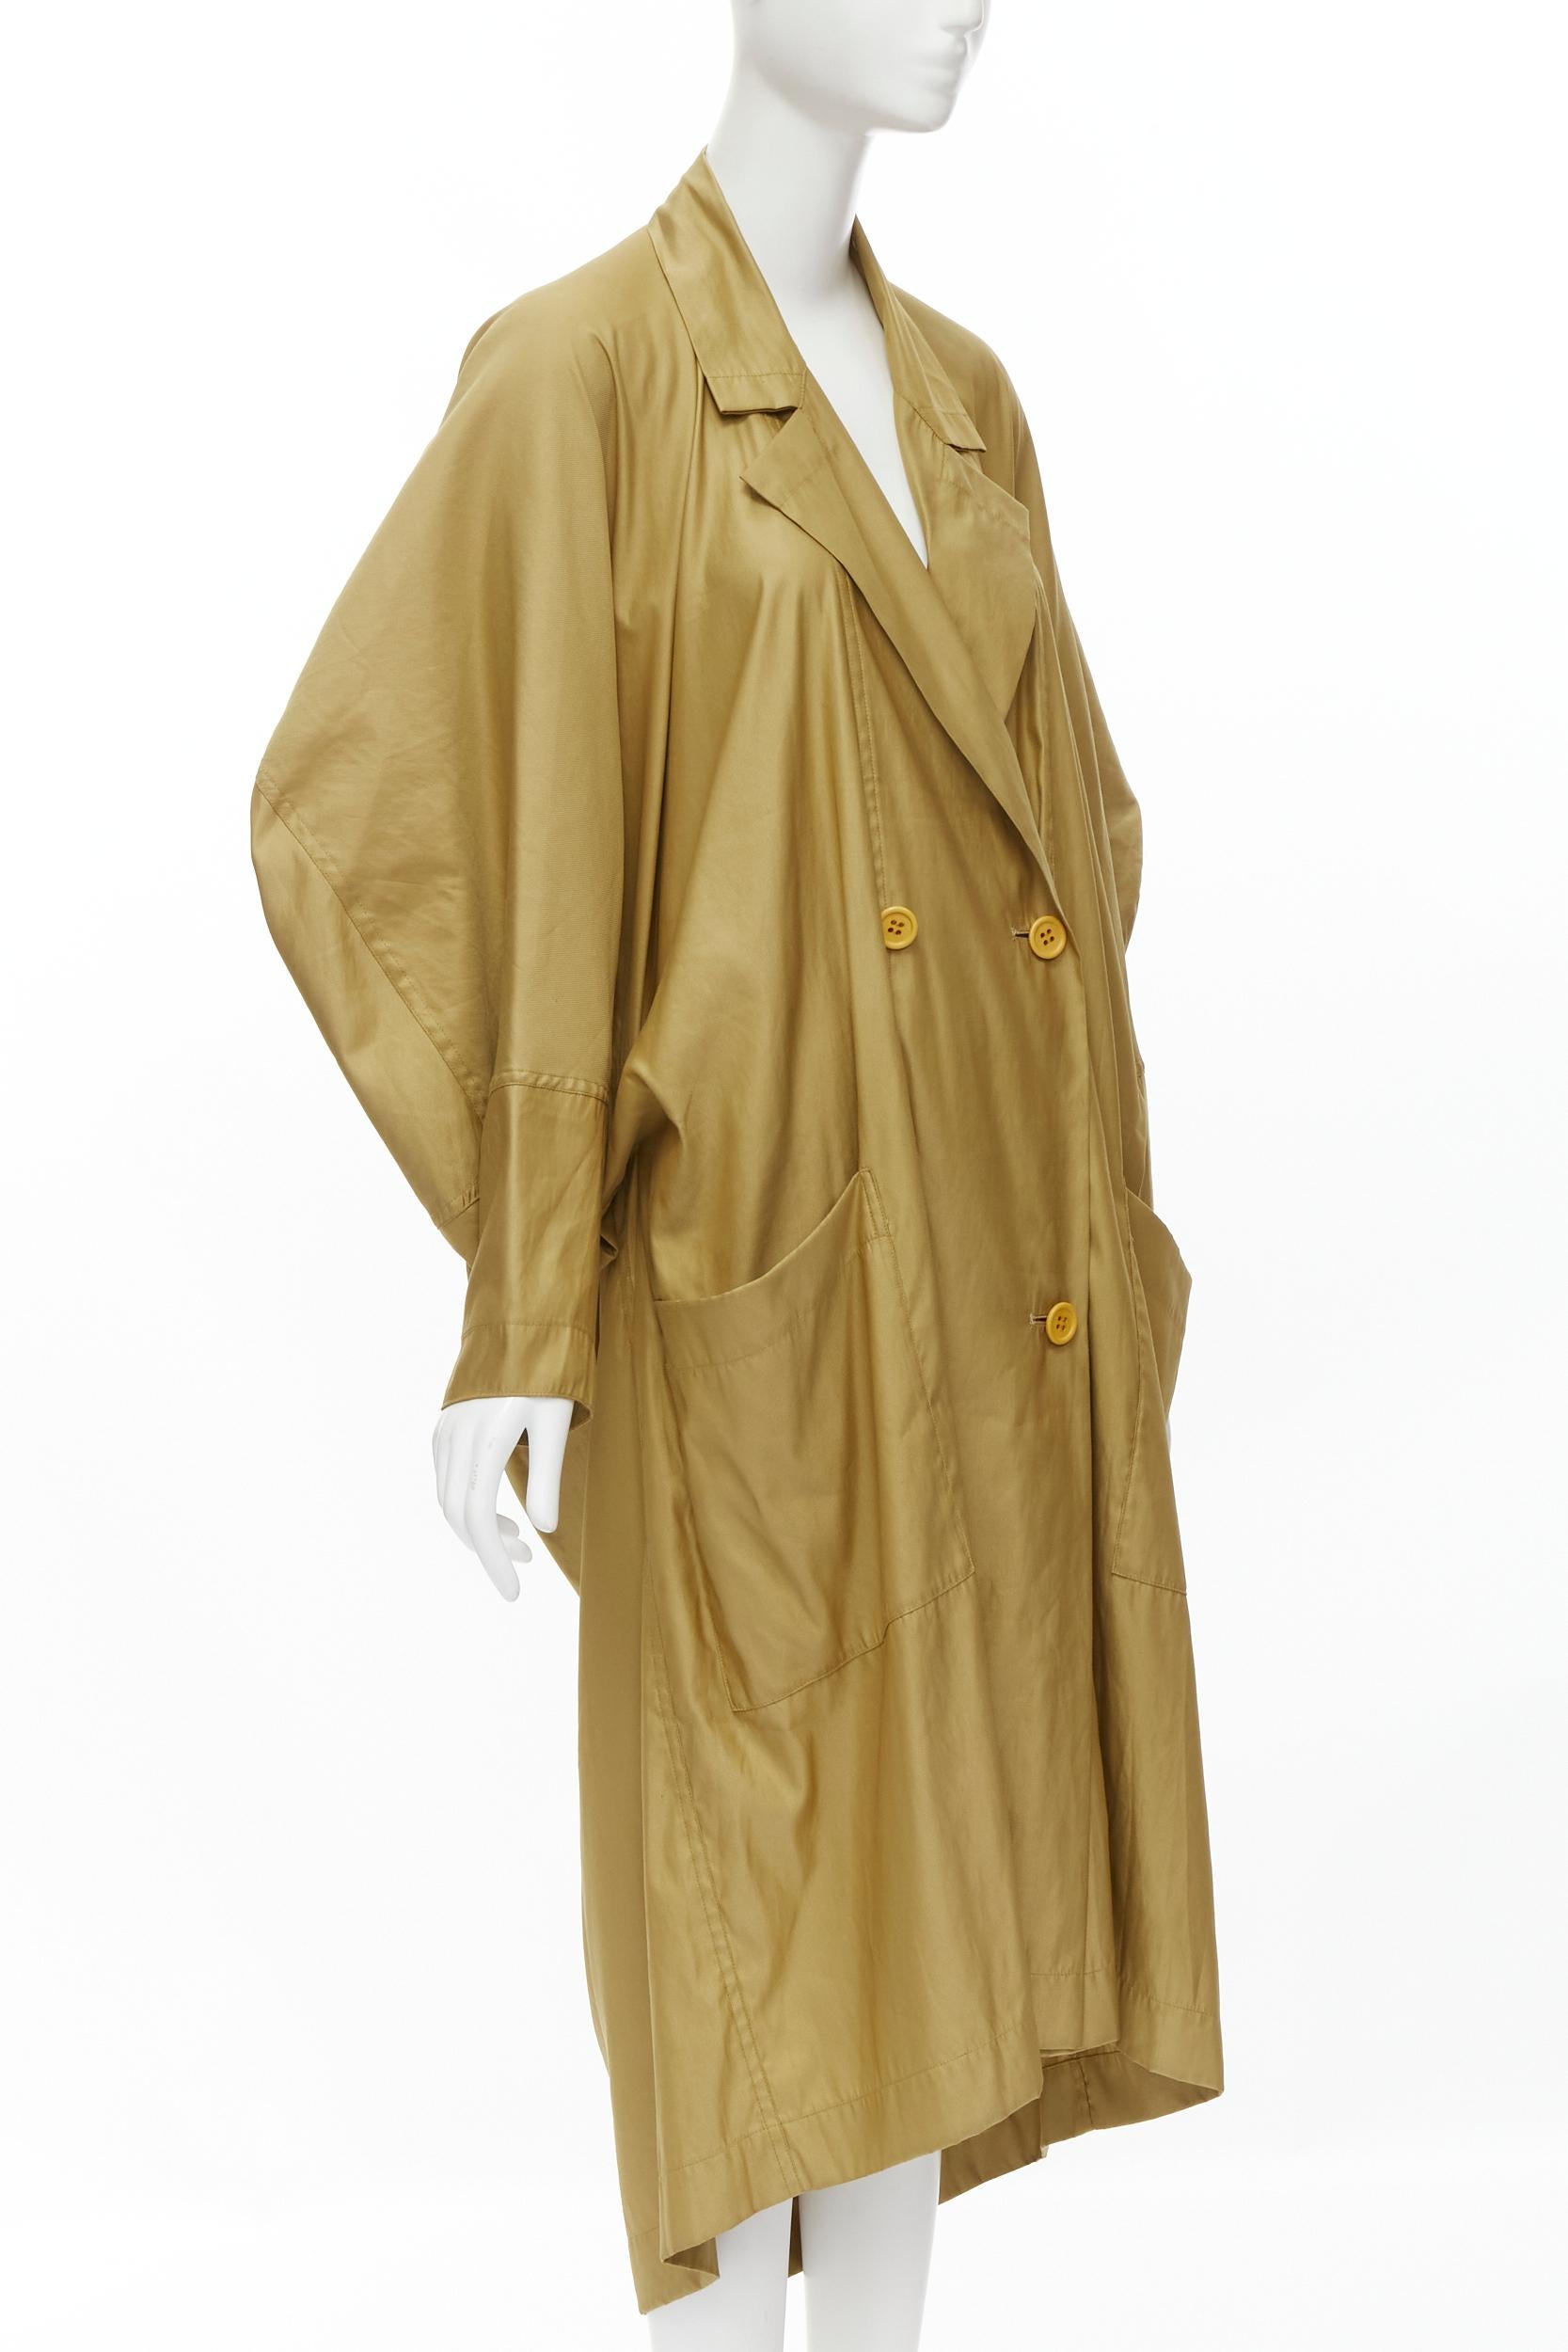 columbo's raincoat